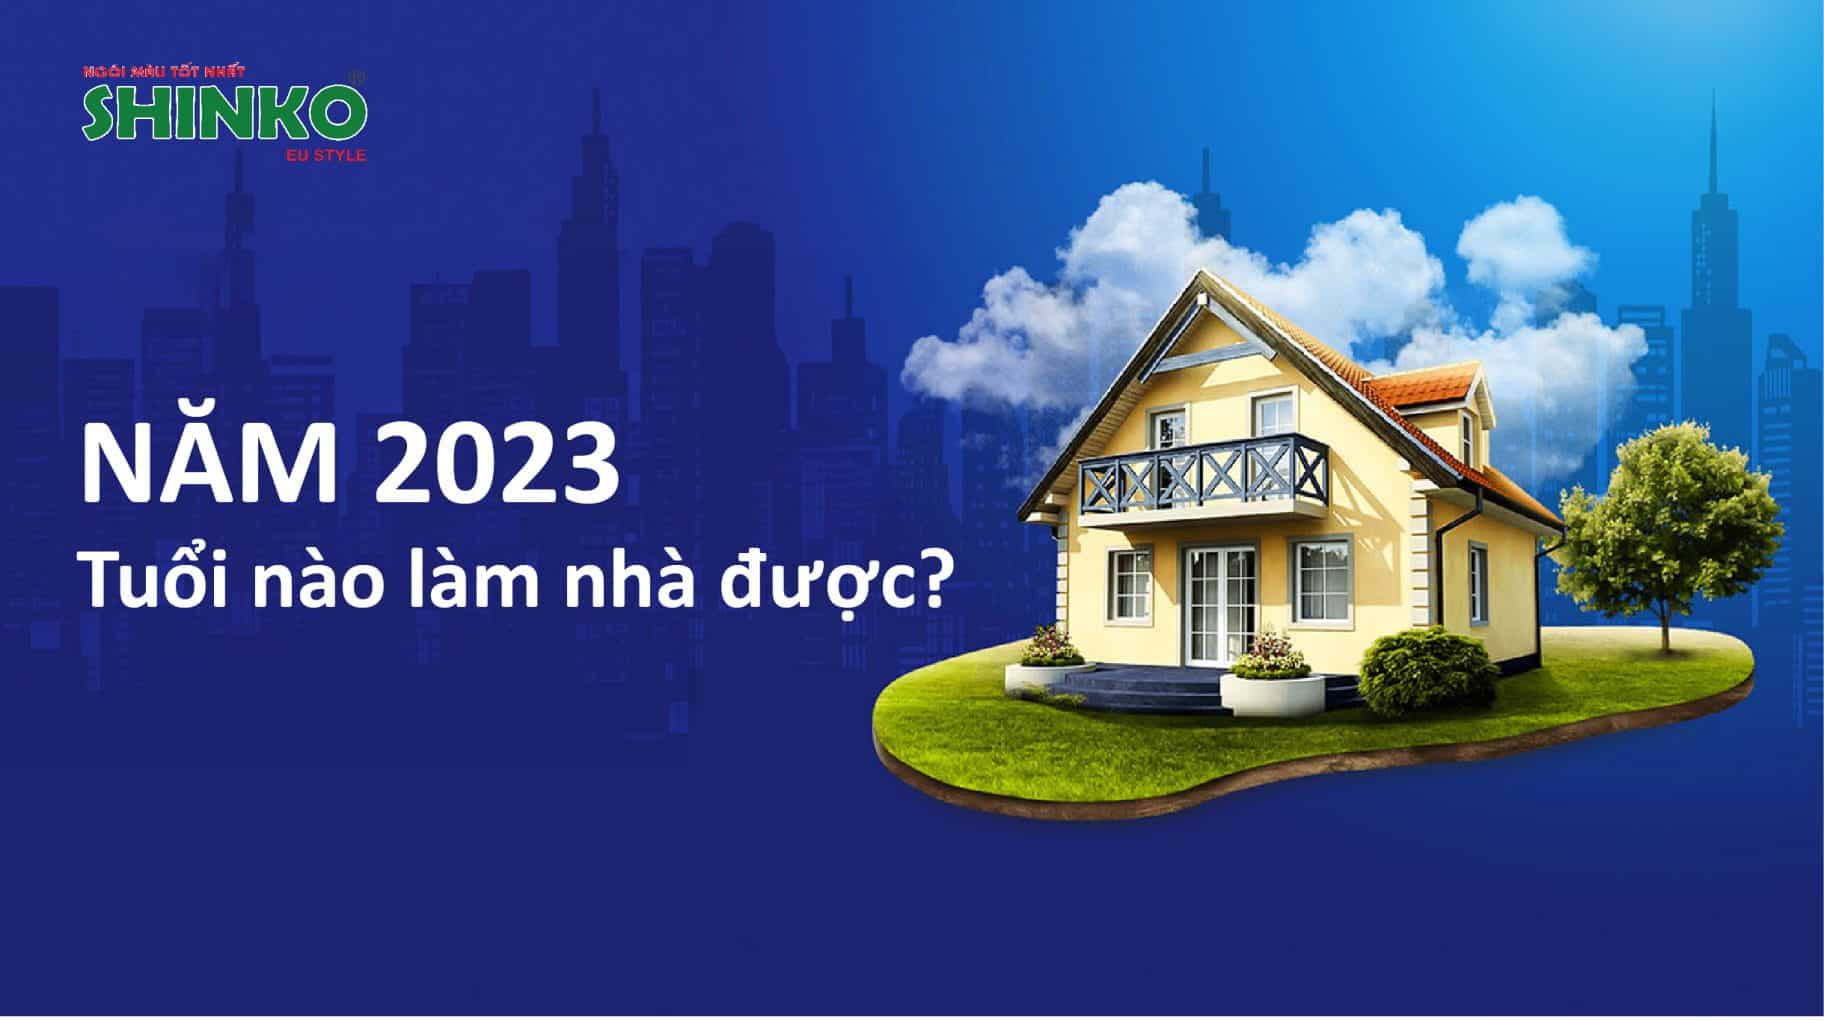 Xem tuổi làm nhà năm 2023 là yếu tố cần thiết để biết được việc xây nhà trong năm này có hợp phong thủy không và có giúp gia đình bạn phất lên hay không.